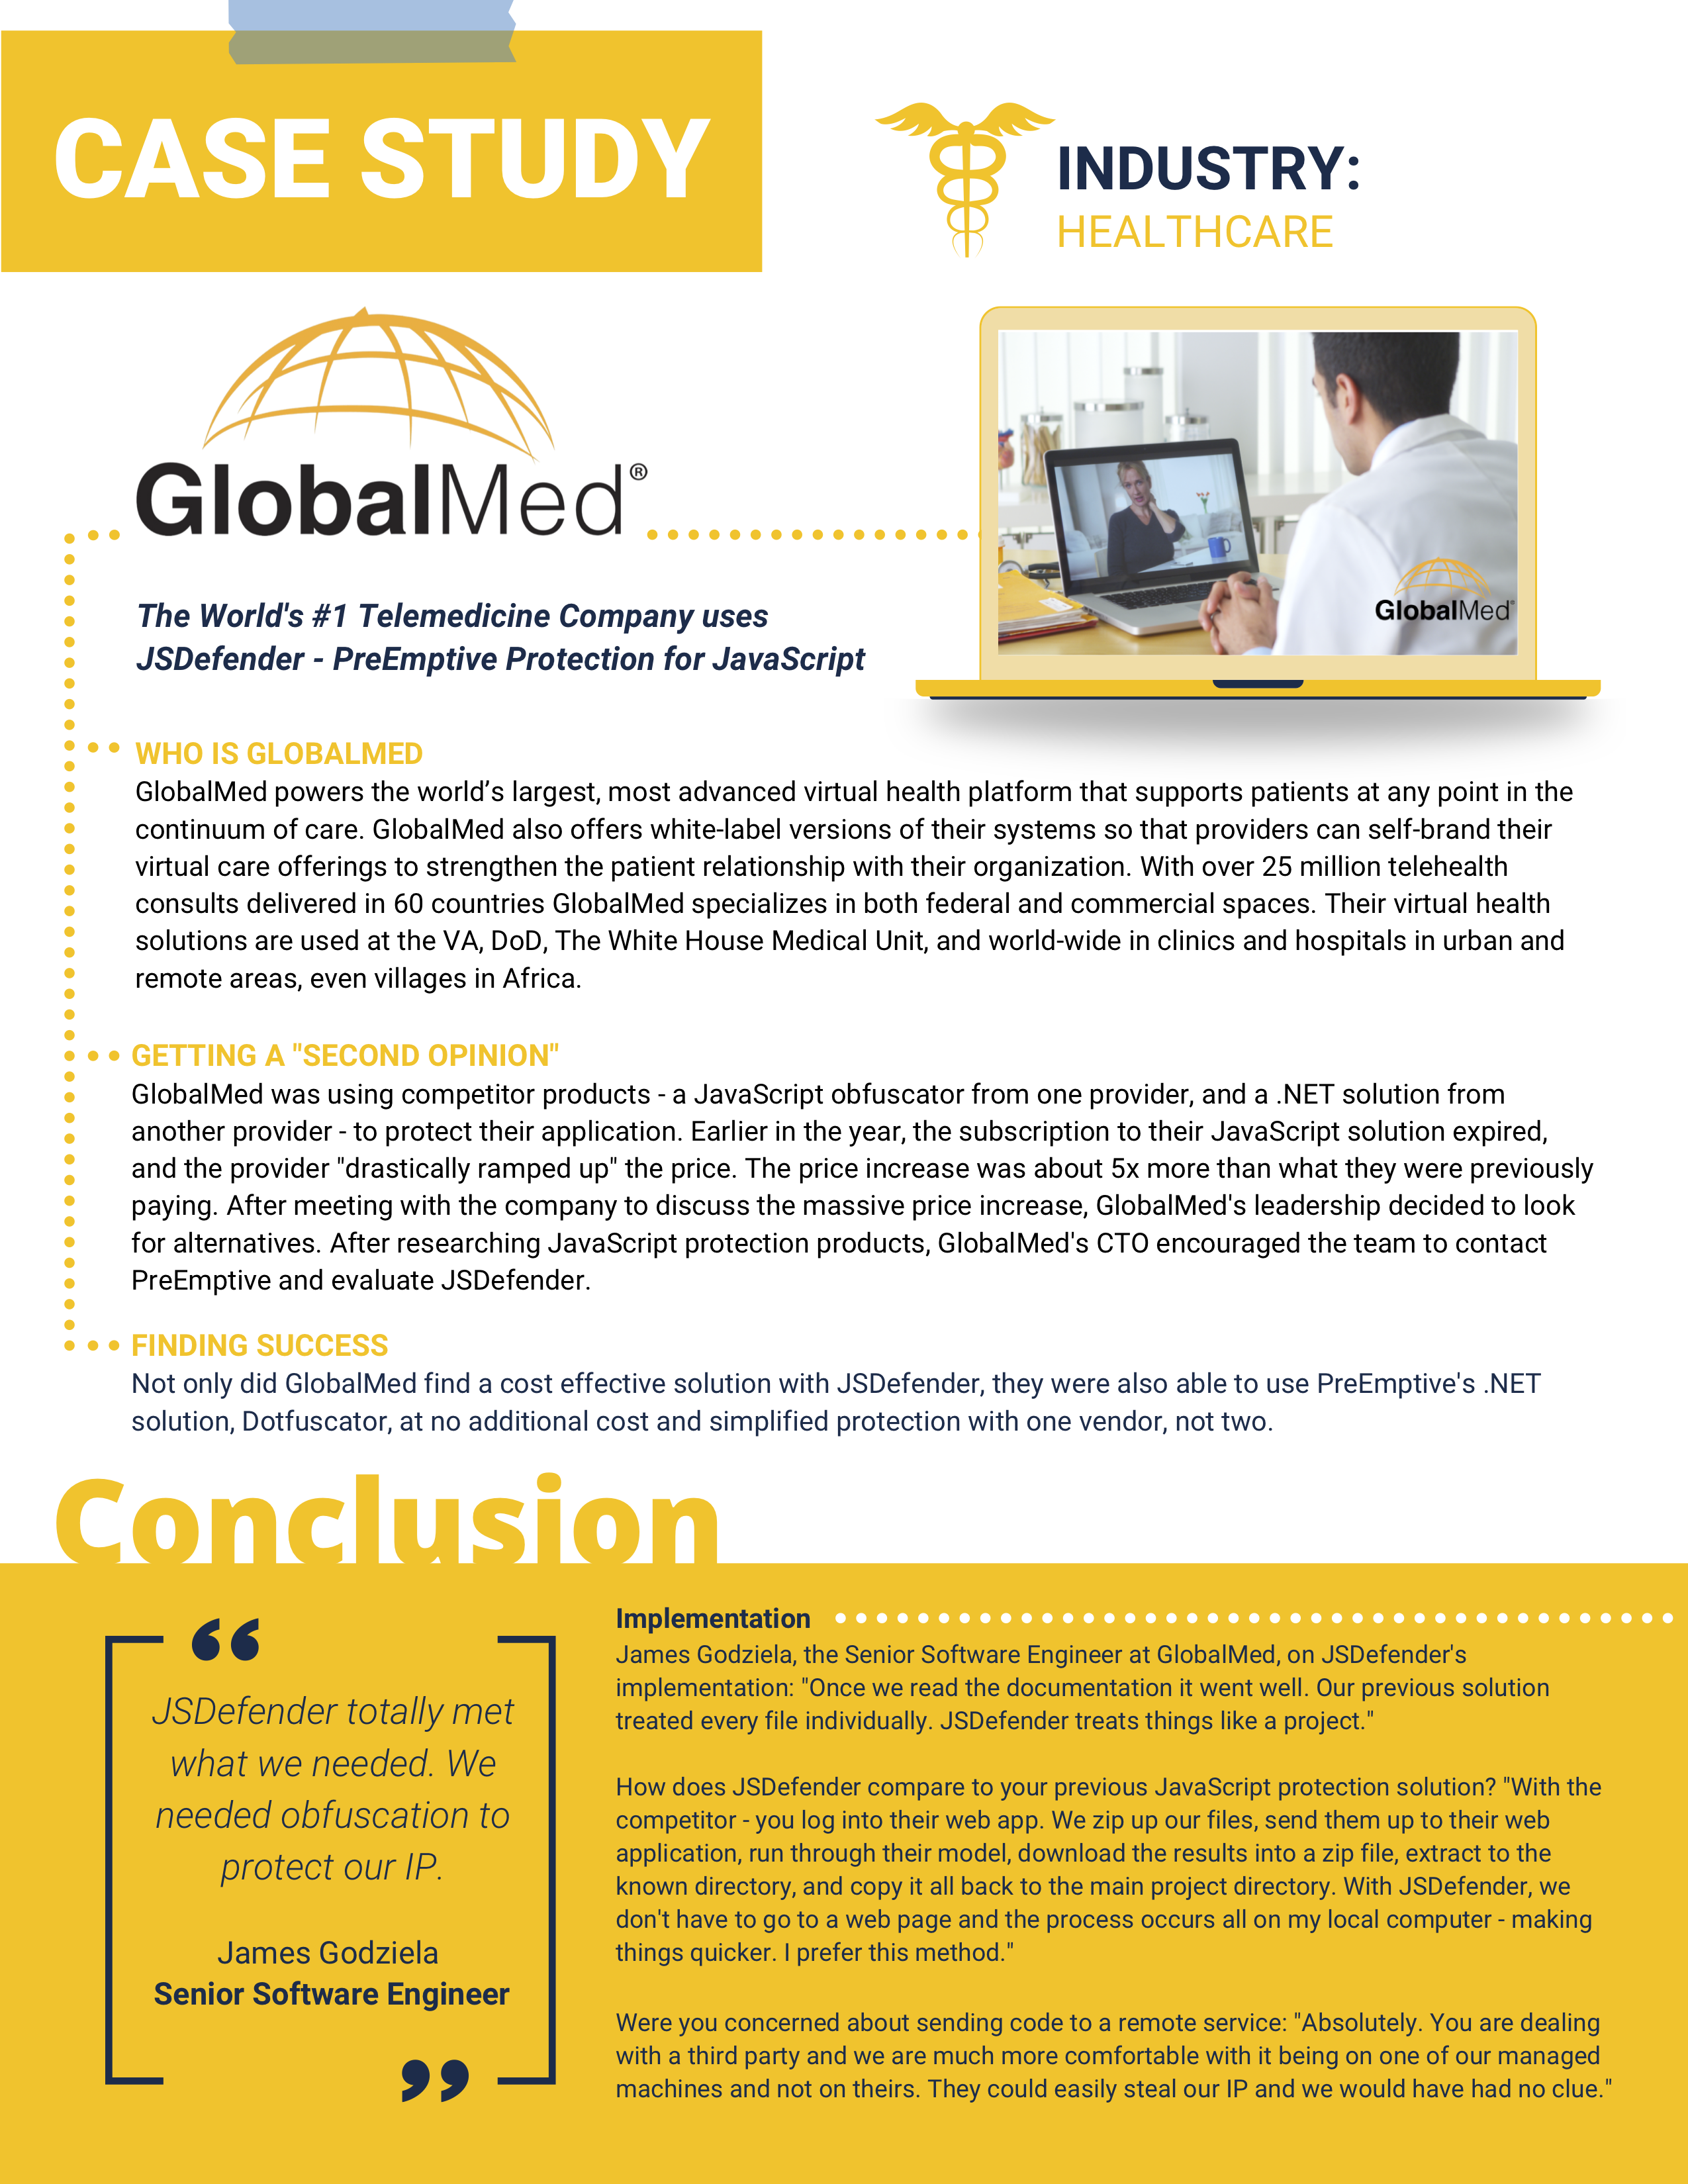 GlobalMed Healthcare Case Study image download